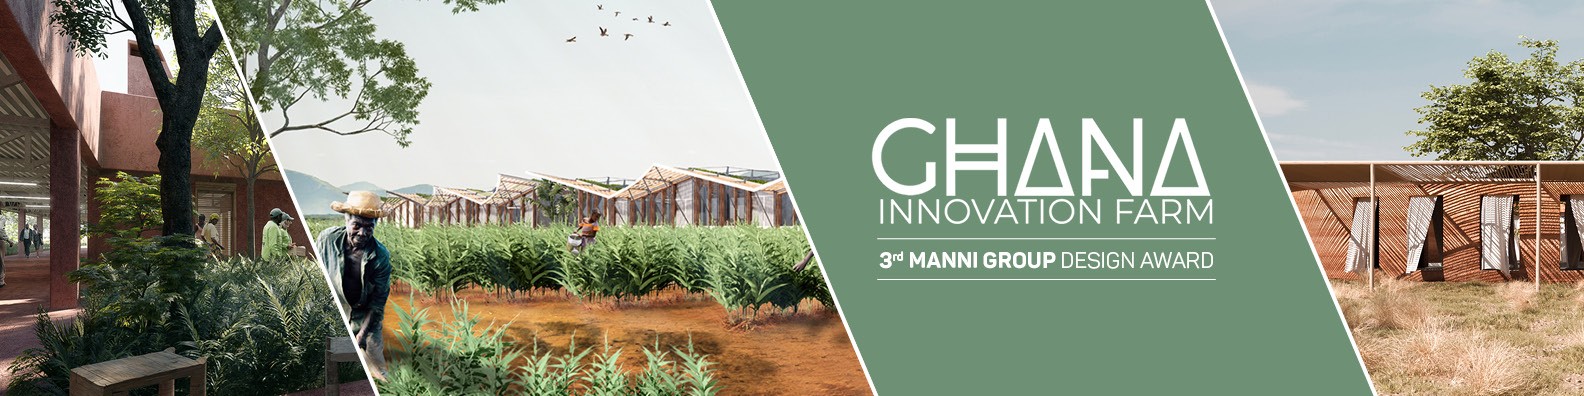 Ghana-innovation-farm-awards-manni